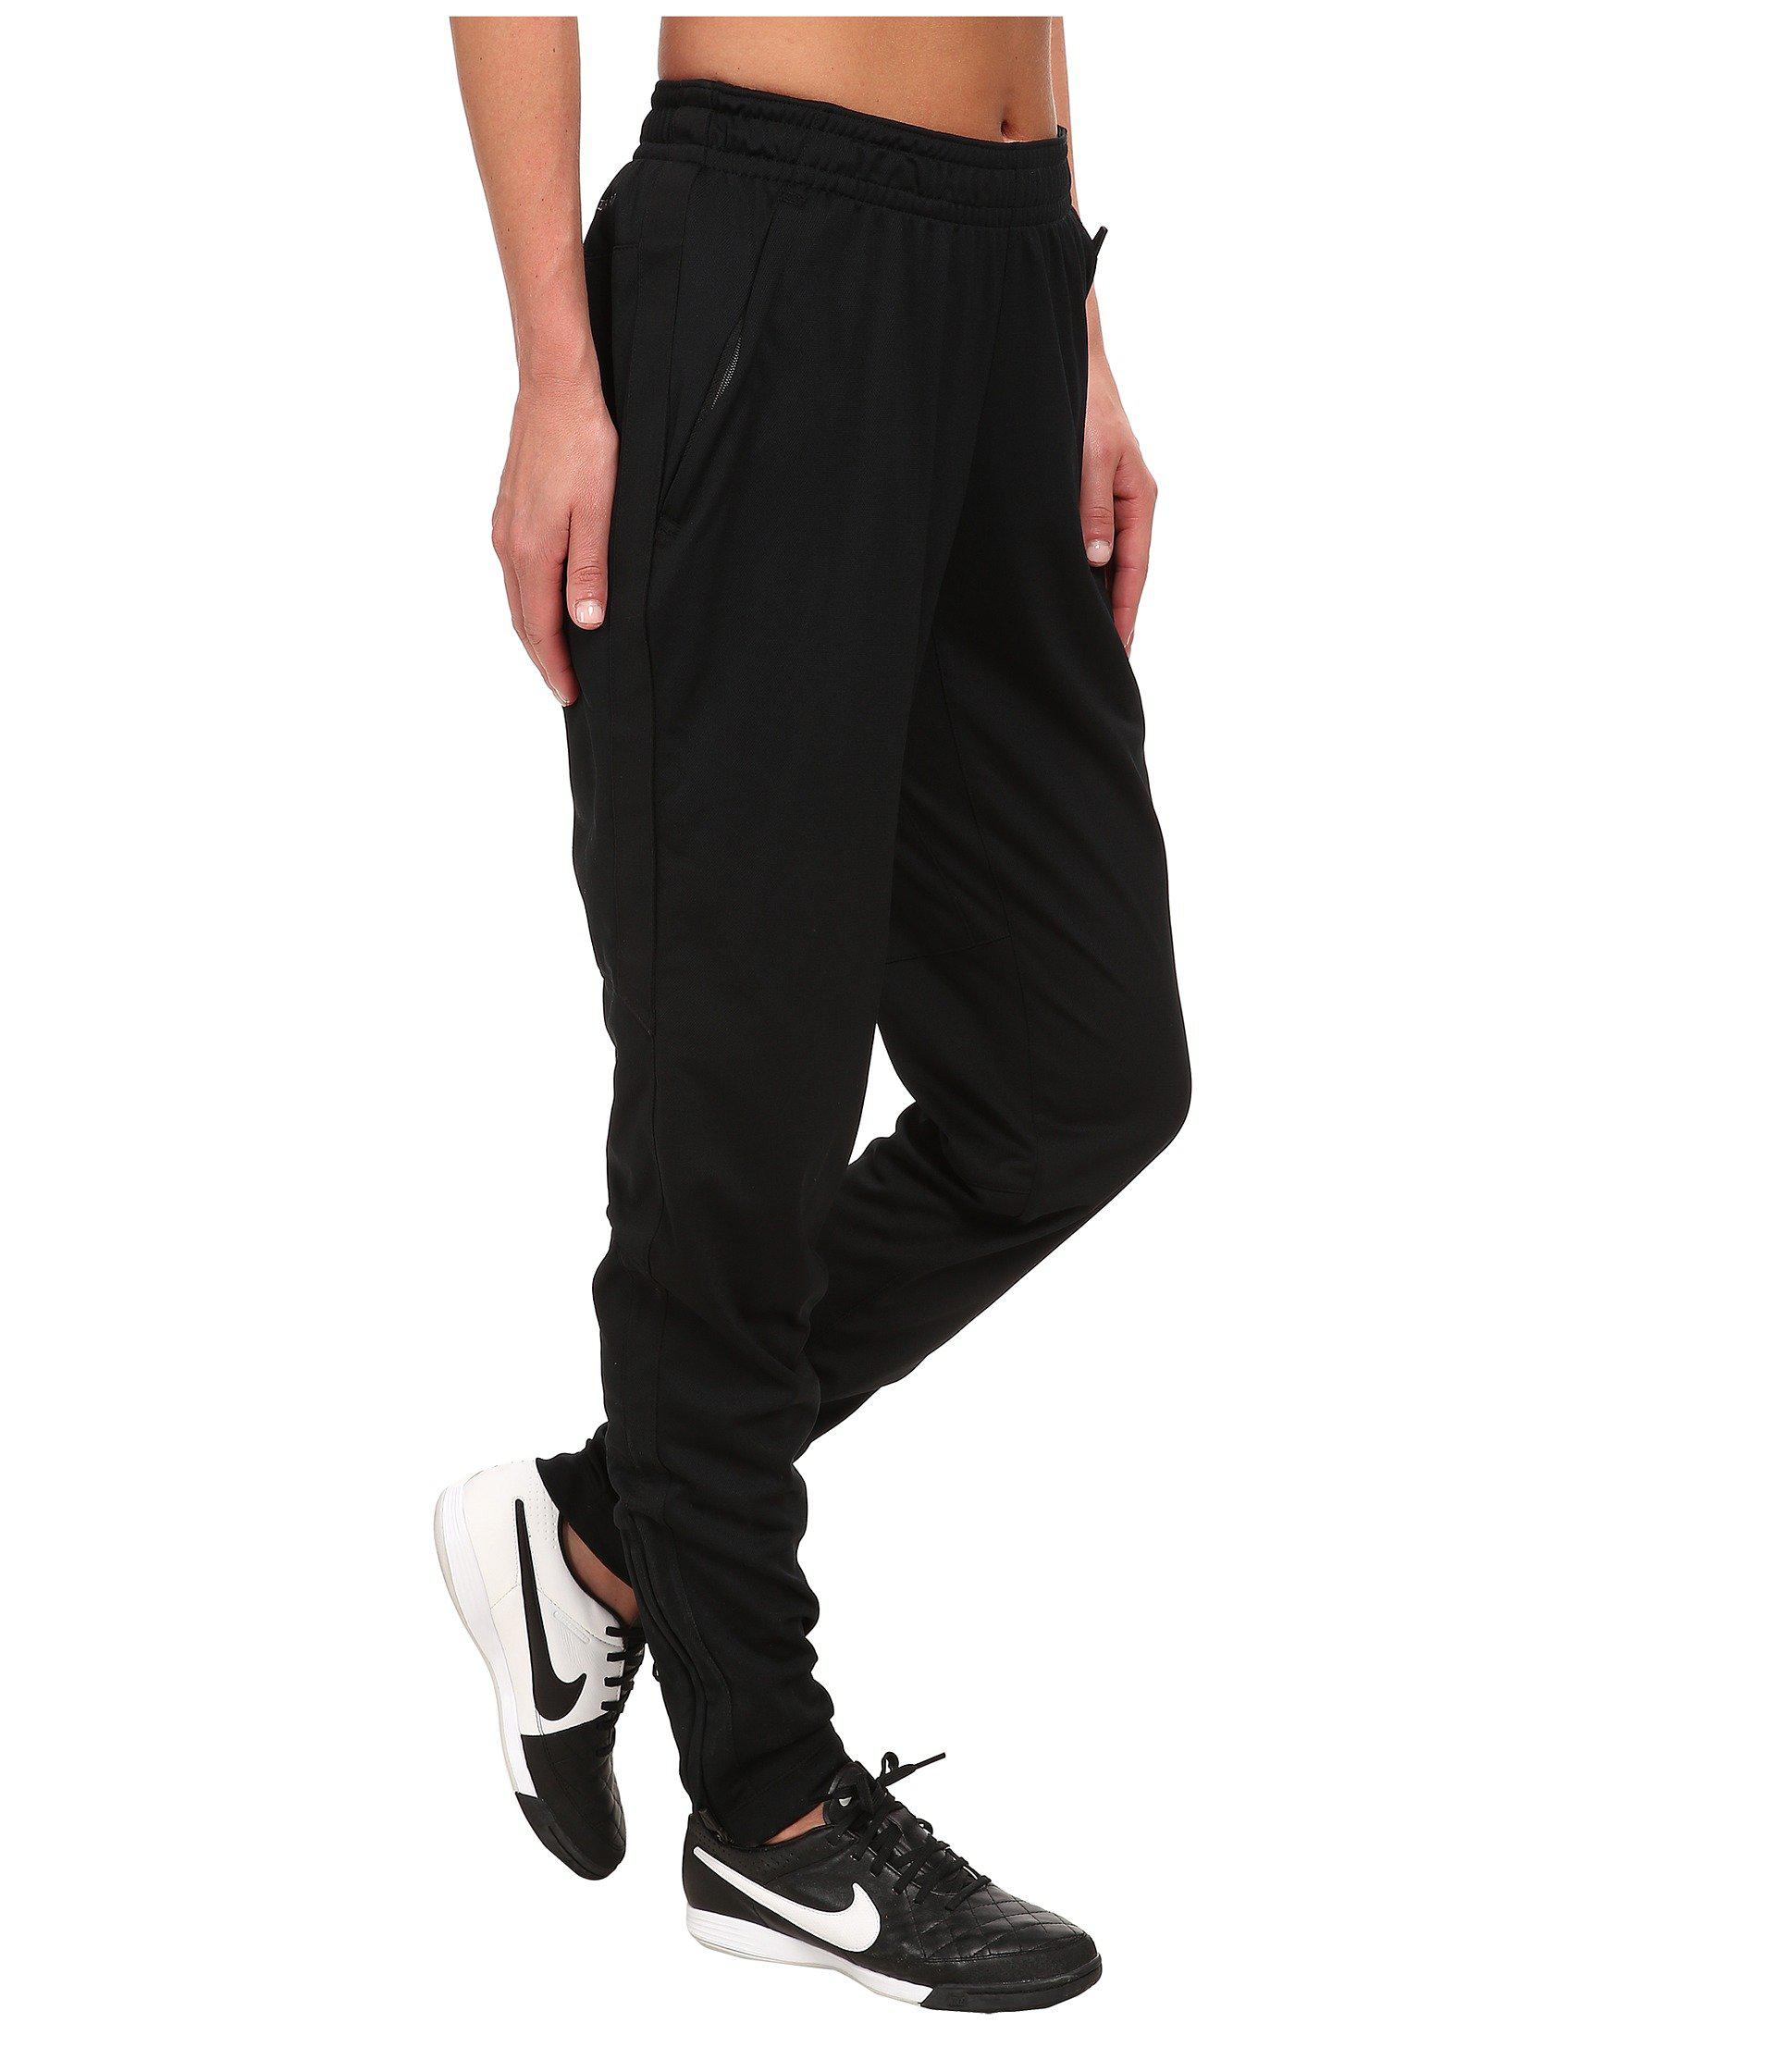 Nike Academy Knit Soccer Pant in Black/Black/White (Black) for Men - Lyst